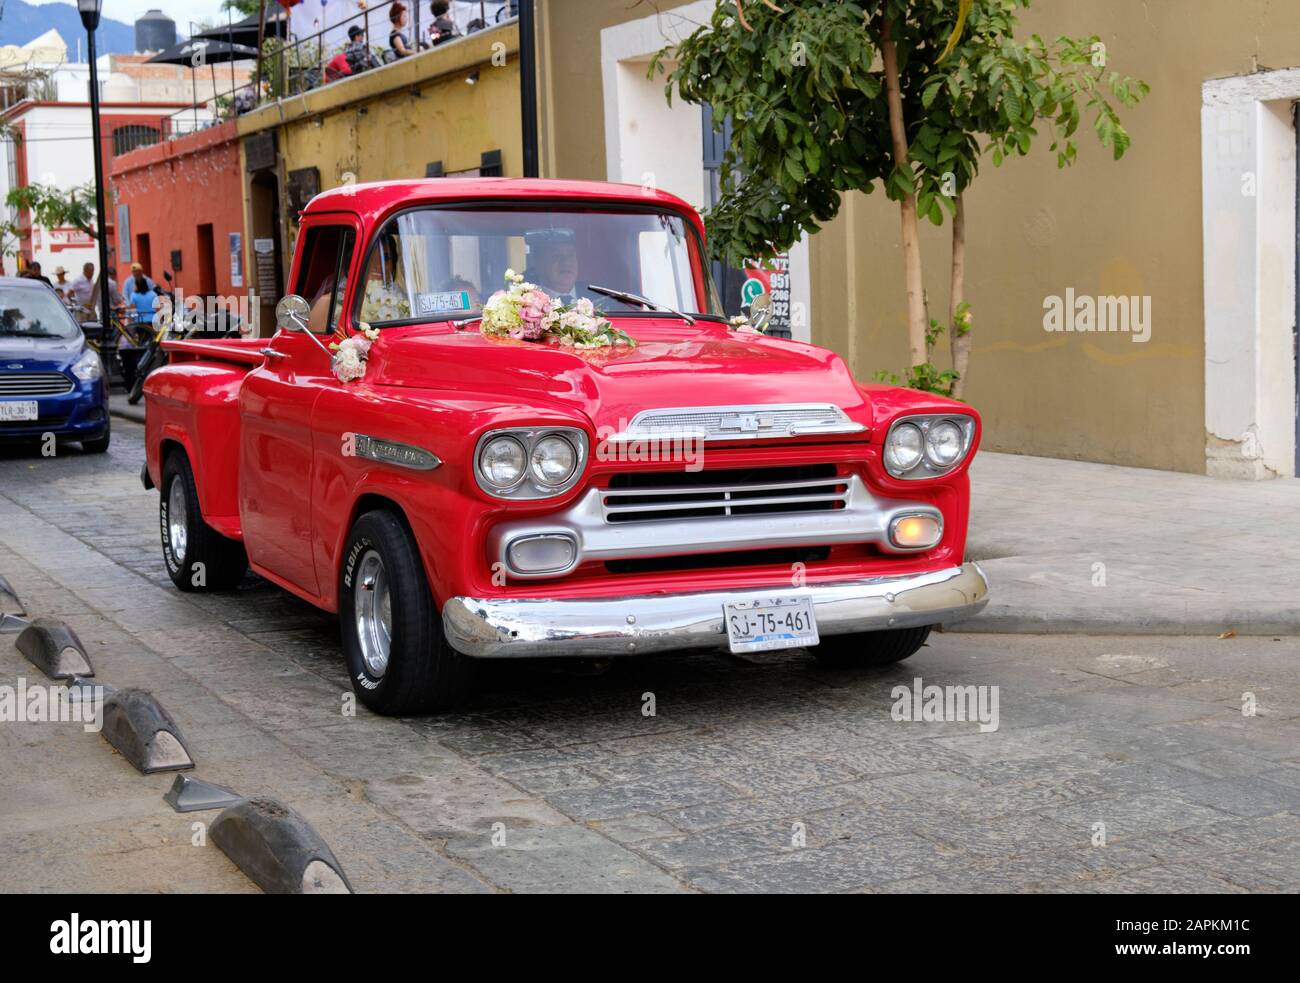 Red Chevrolet Apache Truck, partie de la fête de mariage, dans la rue vieille ville coloniale Oaxaca, Mexique Banque D'Images